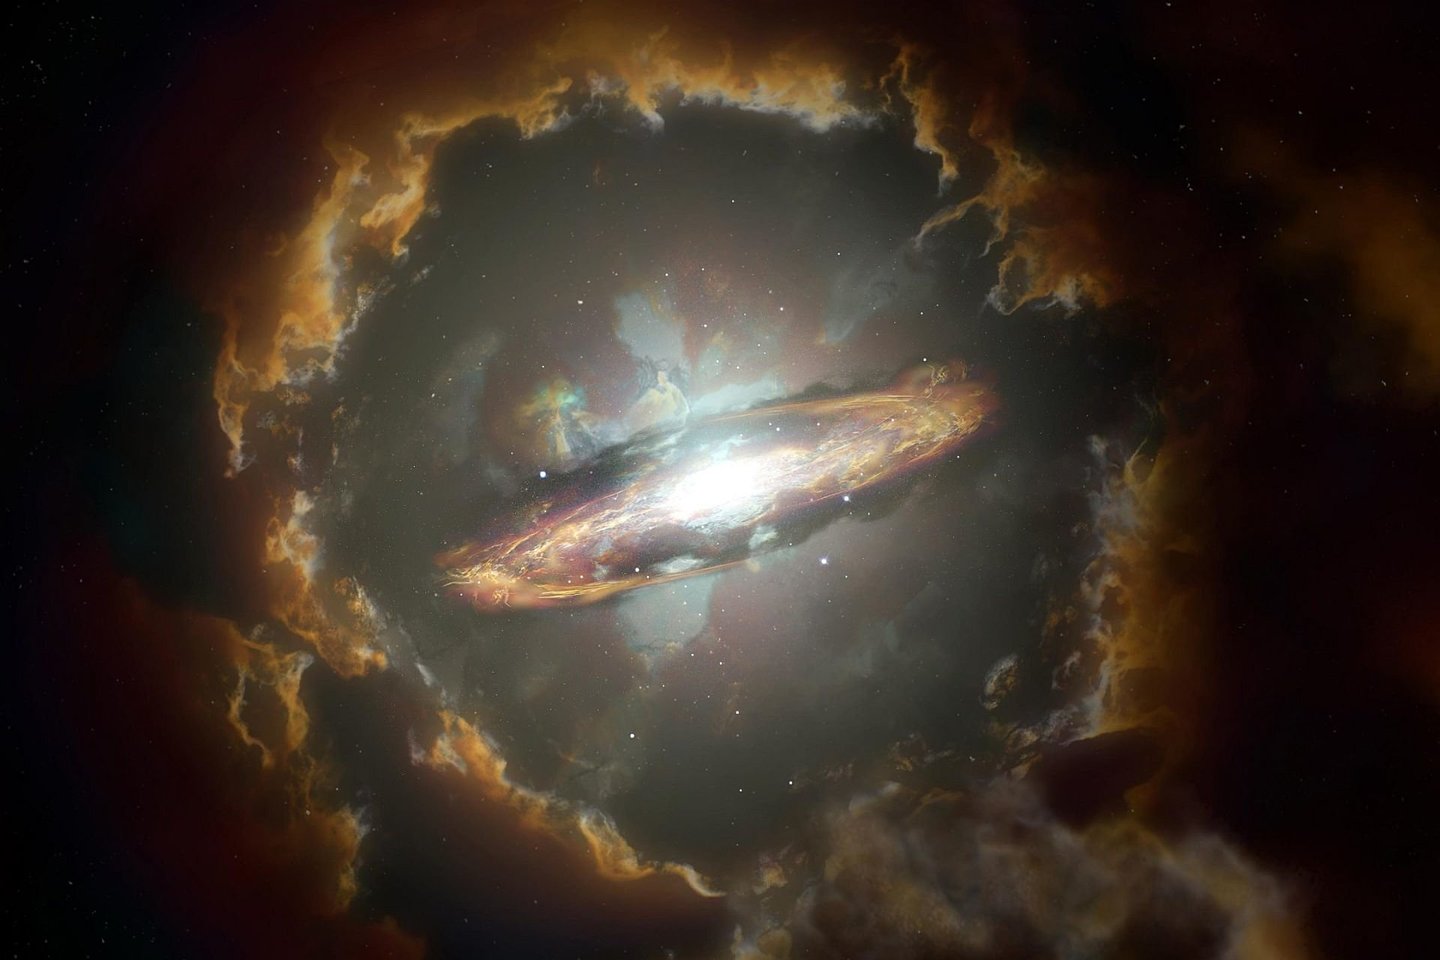  Meininko interpretacija, vaizduojanti Vilko galaktiką - masyvią galaktiką iš ankstyvosios Visatos laikų. <br> NRAO/AUI/NSF, S. Dagnello iliustr.